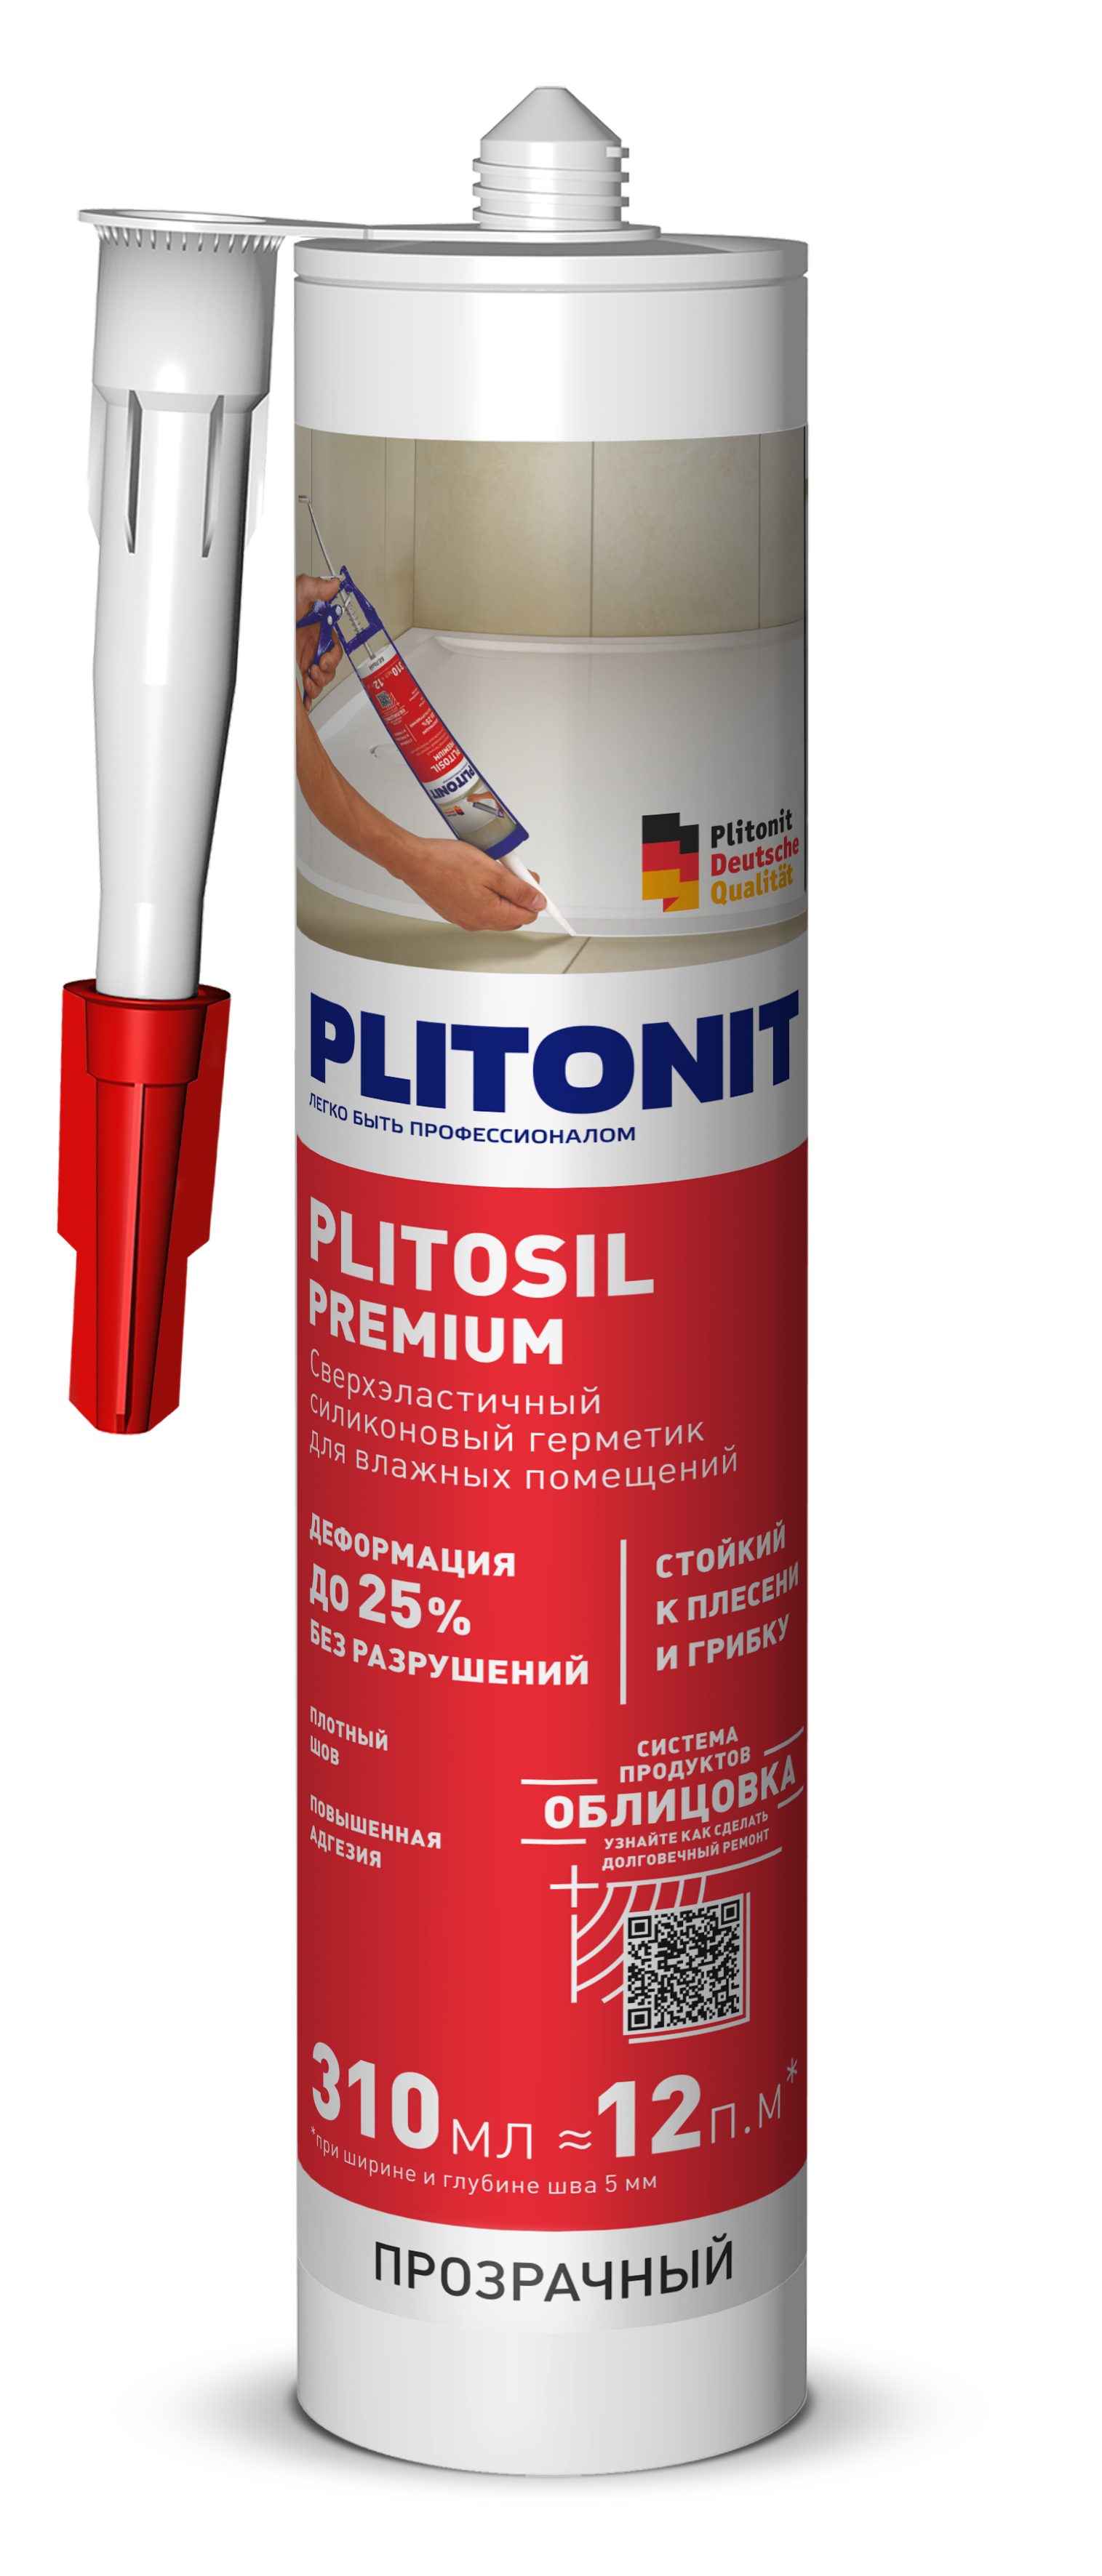 PLITONIT PlitoSil Premium Герметик сверхэластичный силиконовый для влажных помещений, прозрачный 310 мл